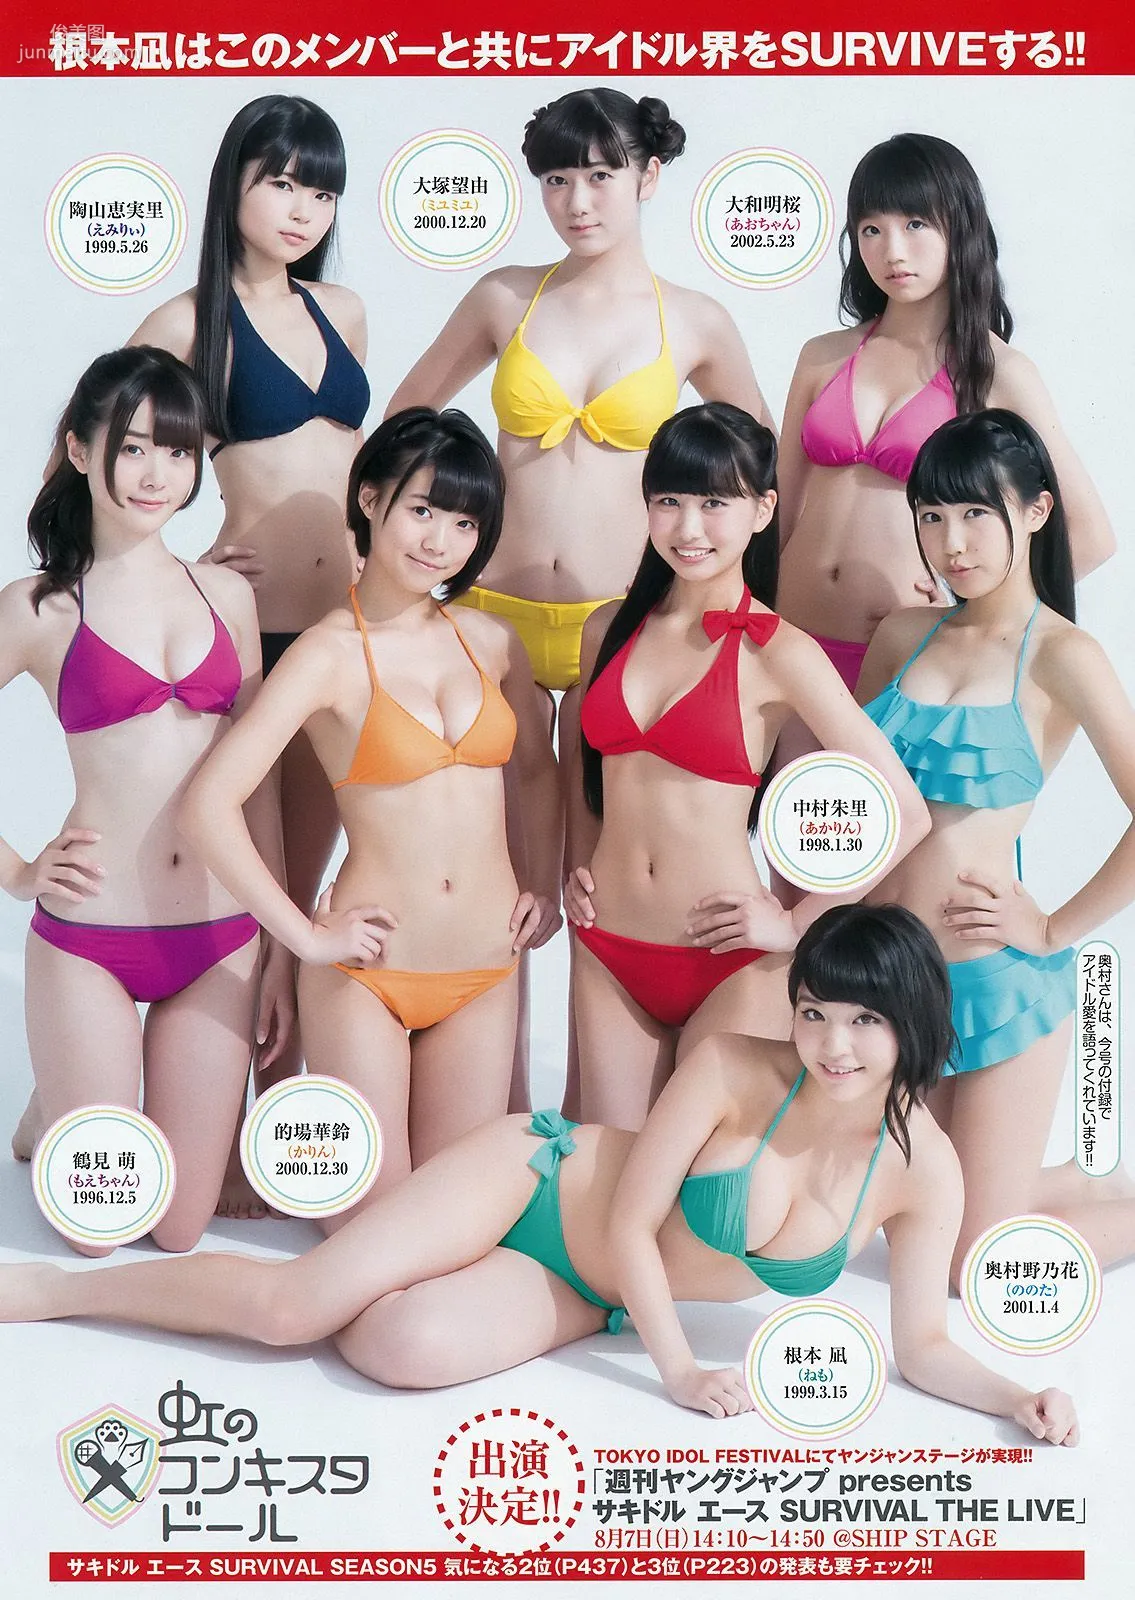 根本凪 横井ほなみ 荒川優那 [Weekly Young Jump] 2016年No.36 写真杂志7